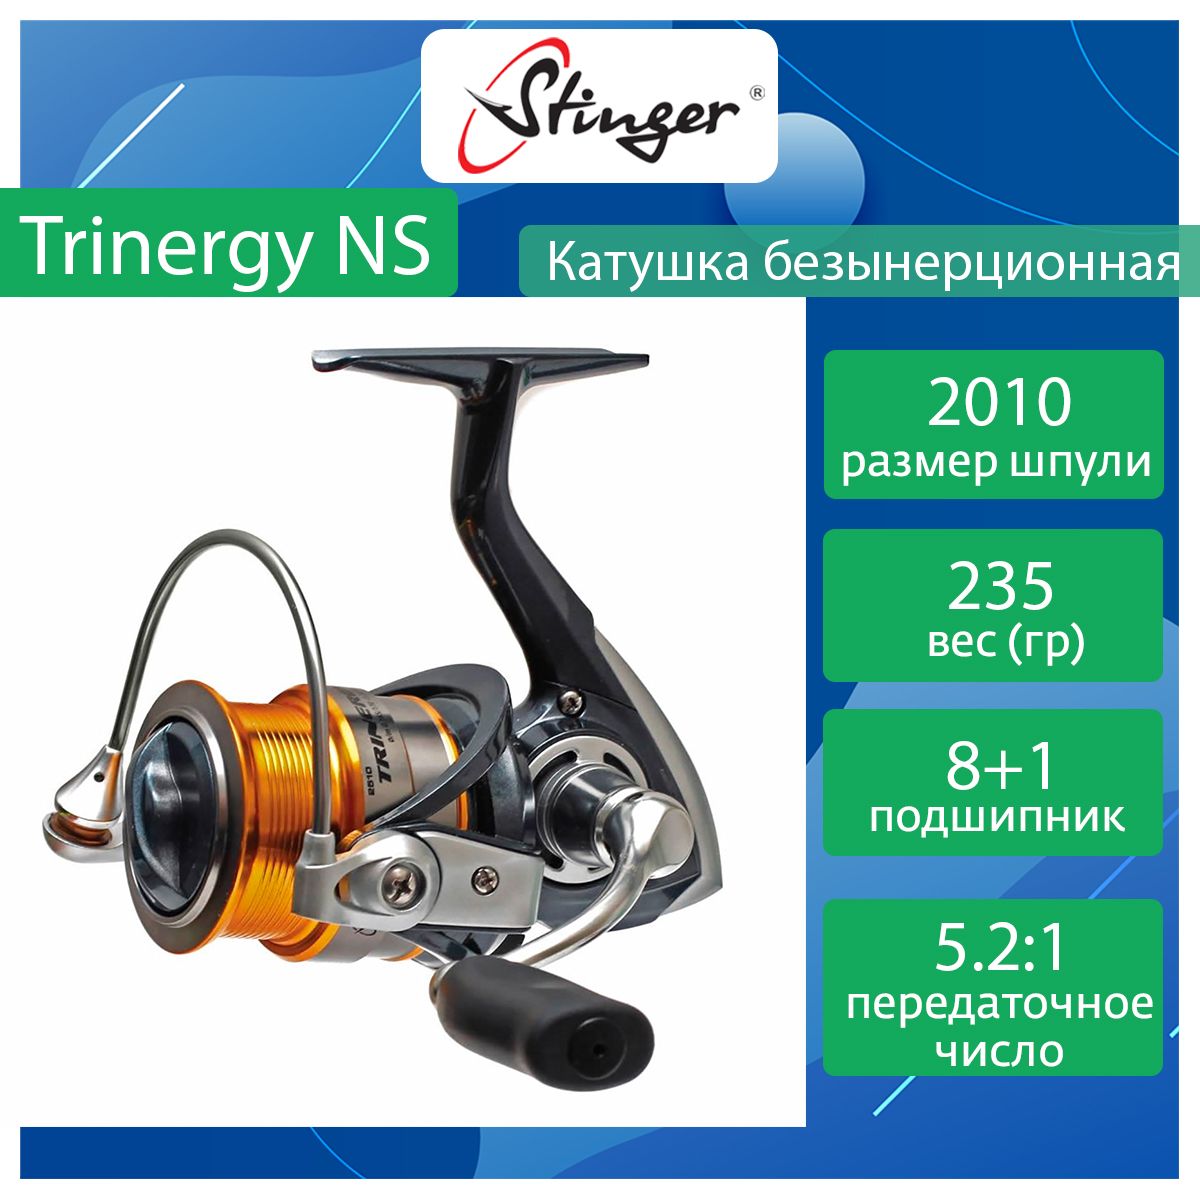 Катушка для рыбалки безынерционная Stinger Trinergy NS ef55178